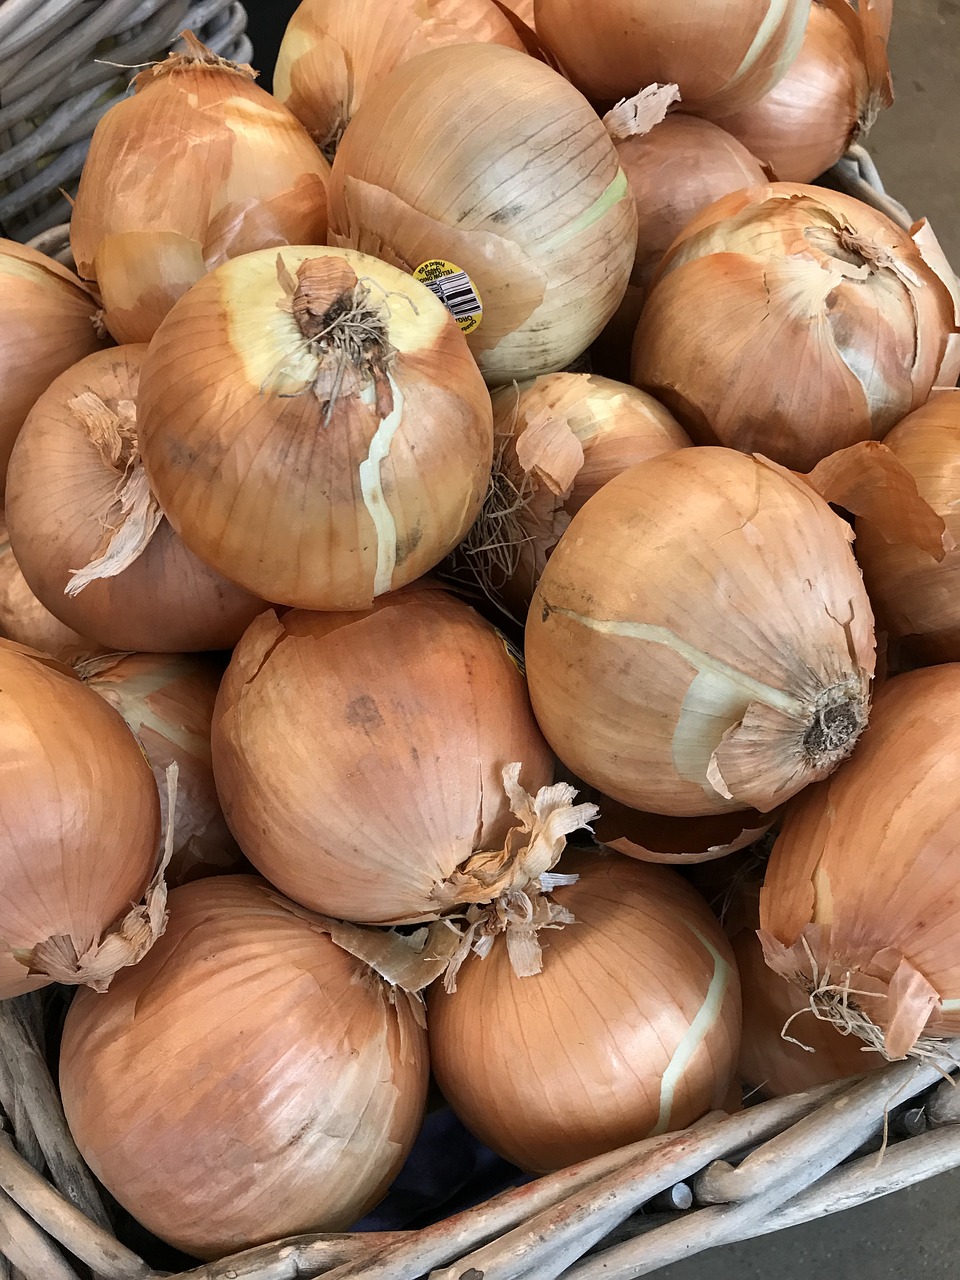 Sheboygan Brats'n Vidalia Onion